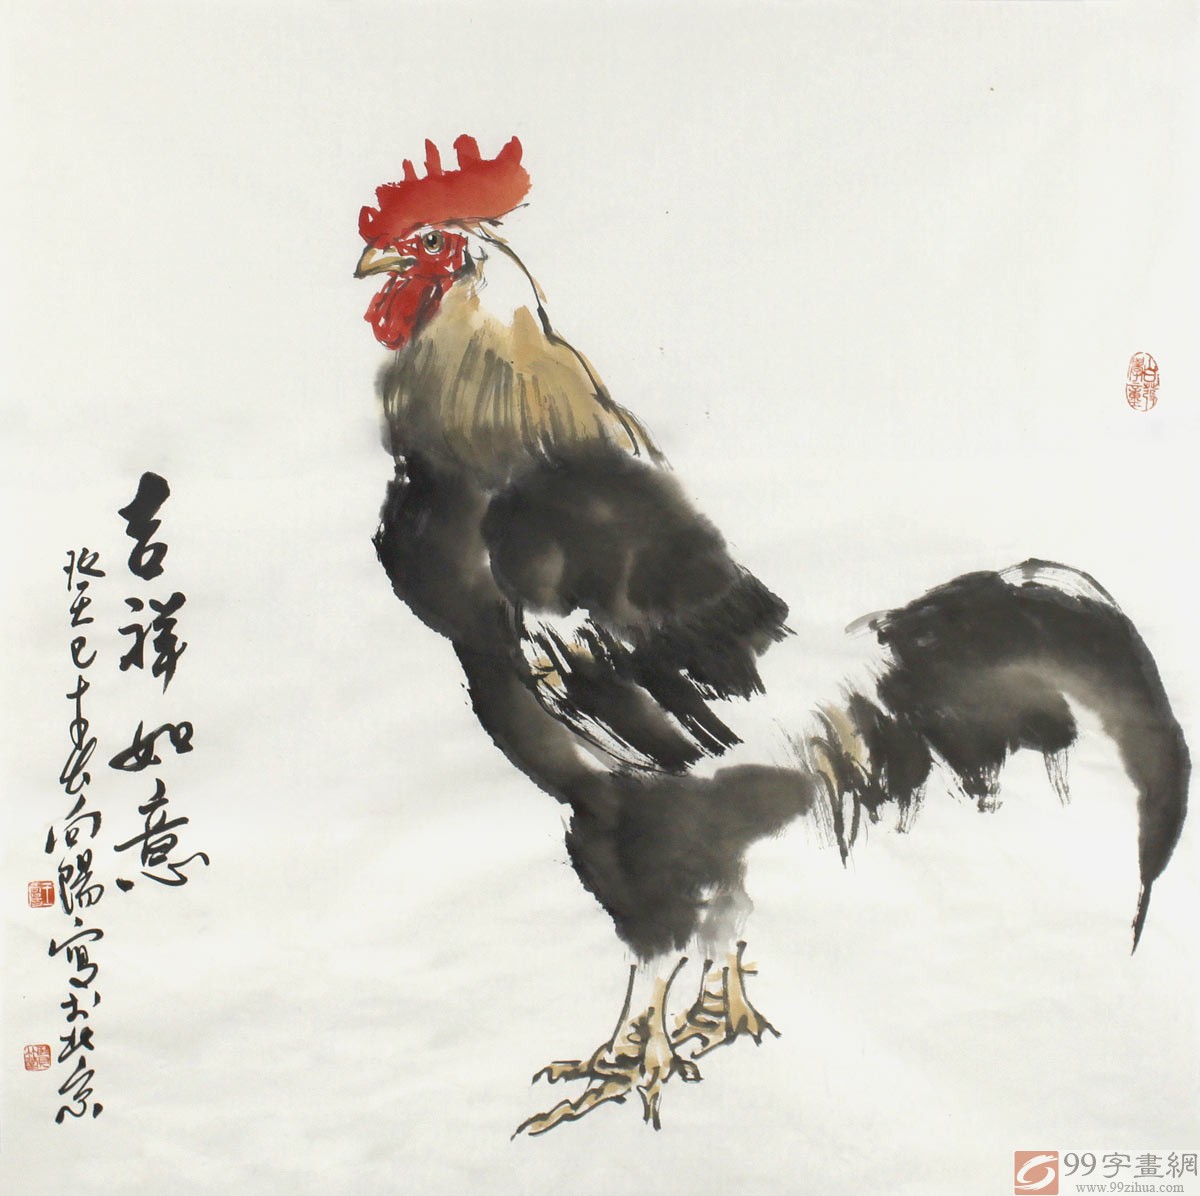 大吉大利国画 - 雄鸡图 - 99字画网